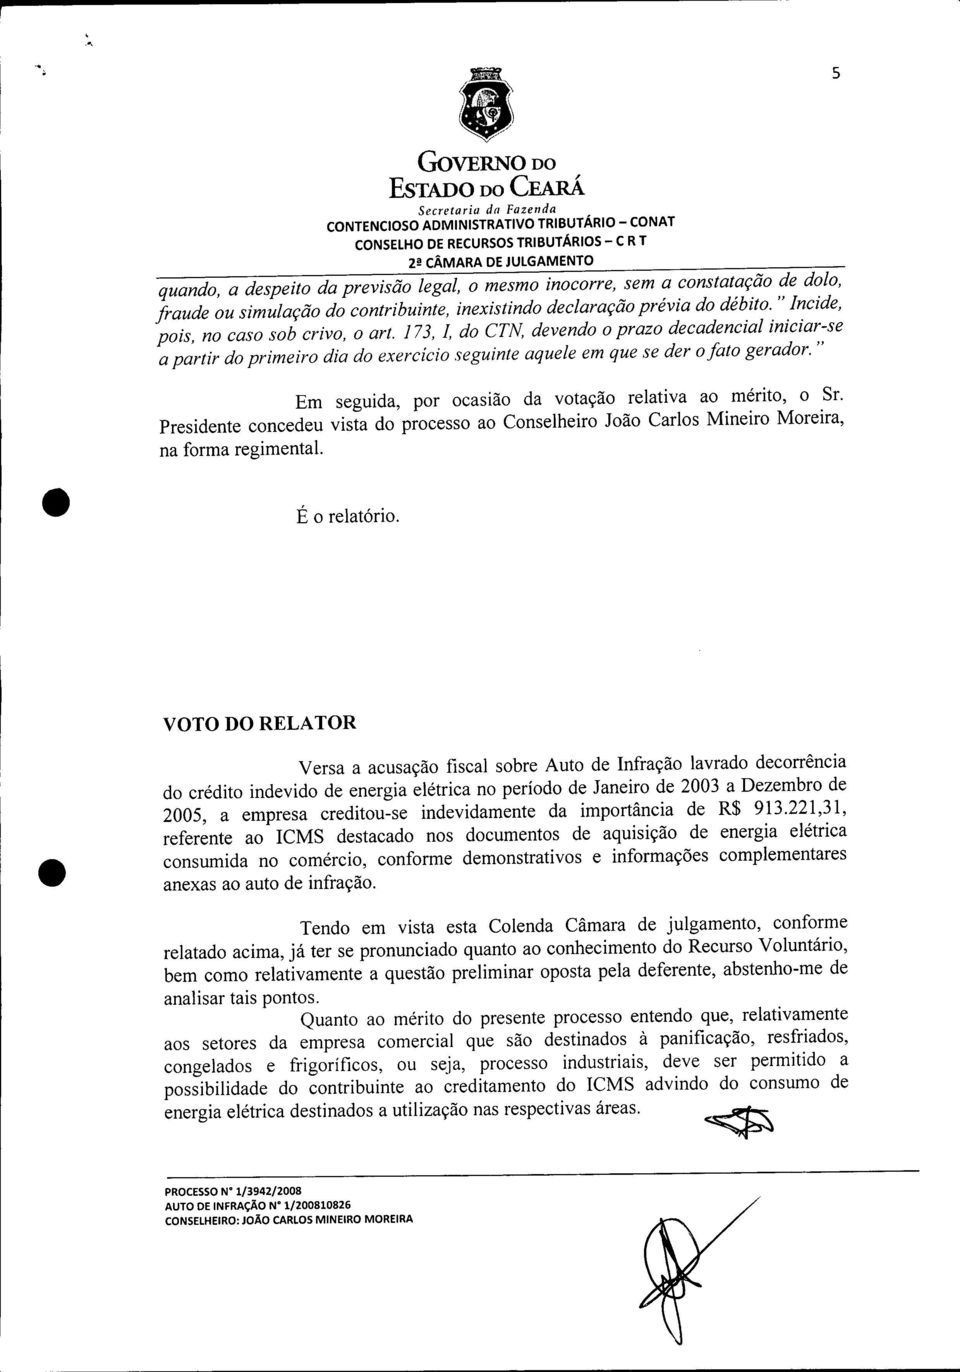 " Em seguida, por ocasião da votação relativa ao mérito, o Sr. Presidente concedeu vista do processo ao Conselheiro João Carlos Mineiro Moreira, na forma regimental. É o relatório.